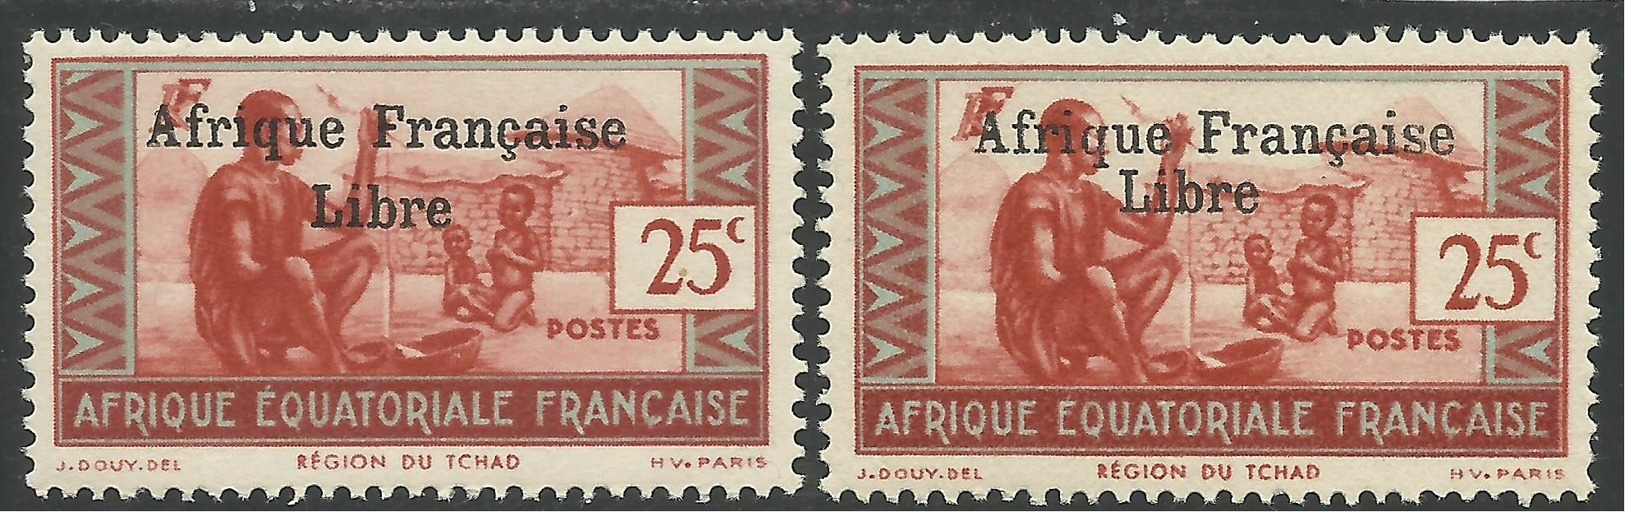 AFRIQUE EQUATORIALE FRANCAISE - AEF - A.E.F. - 1941 - YT 163** - VARIETE SURCHARGE ESPACEE DE 3,5 Mm - Neufs